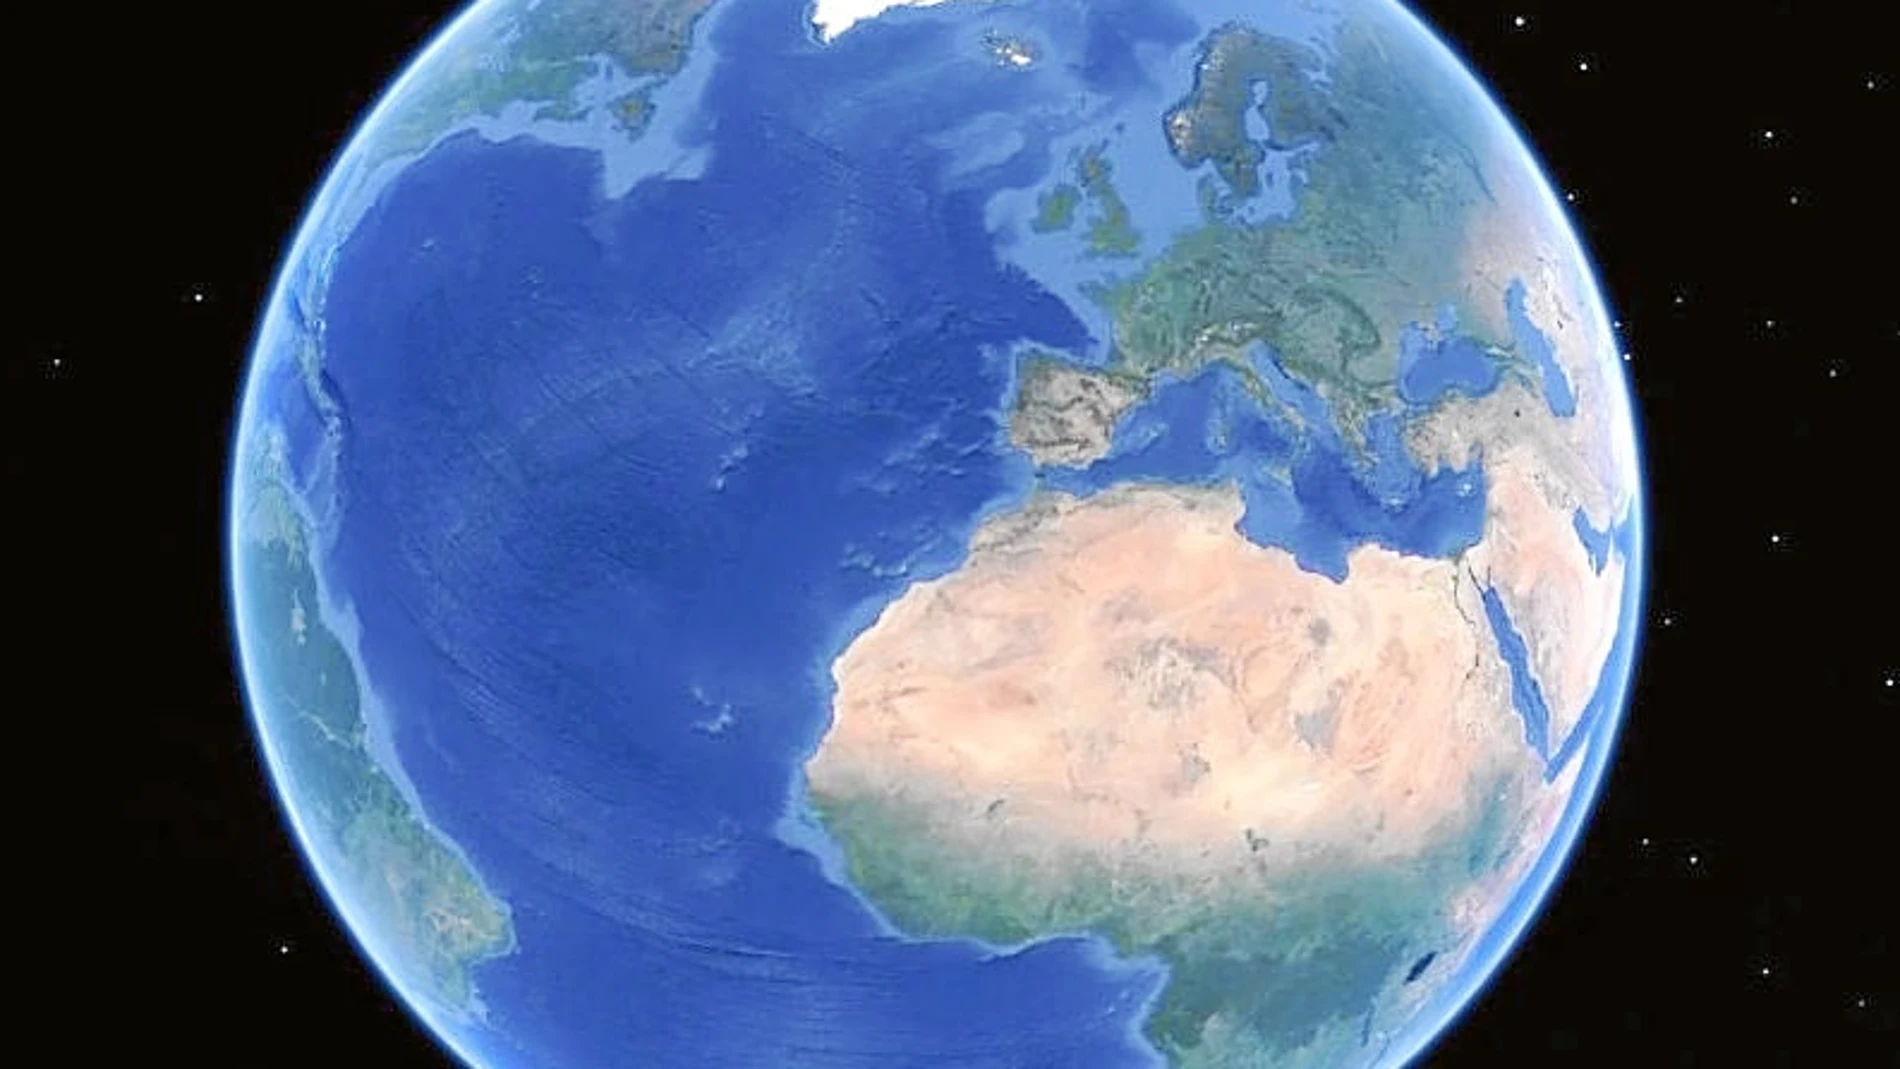 El planeta Tierra visto a través de Google Earth